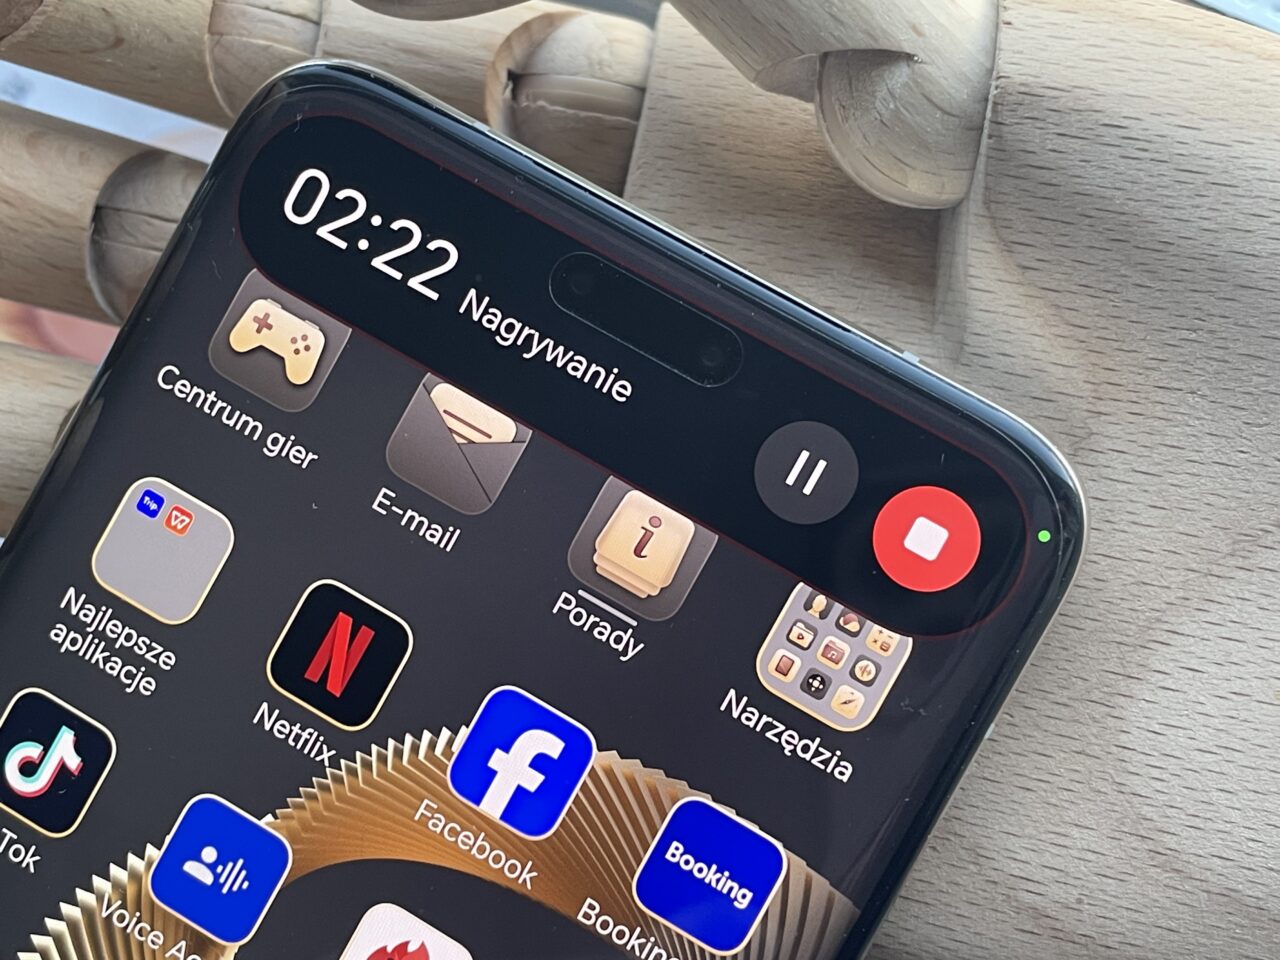 Część przedniego panelu czarnego smartfona z włączonym ekranem pokazującym aplikacje, w tle ręka manekina drewnianego. Ekran wyświetla godzinę 02:22, różne ikony aplikacji i czerwony przycisk nagrywania na górnym pasku.